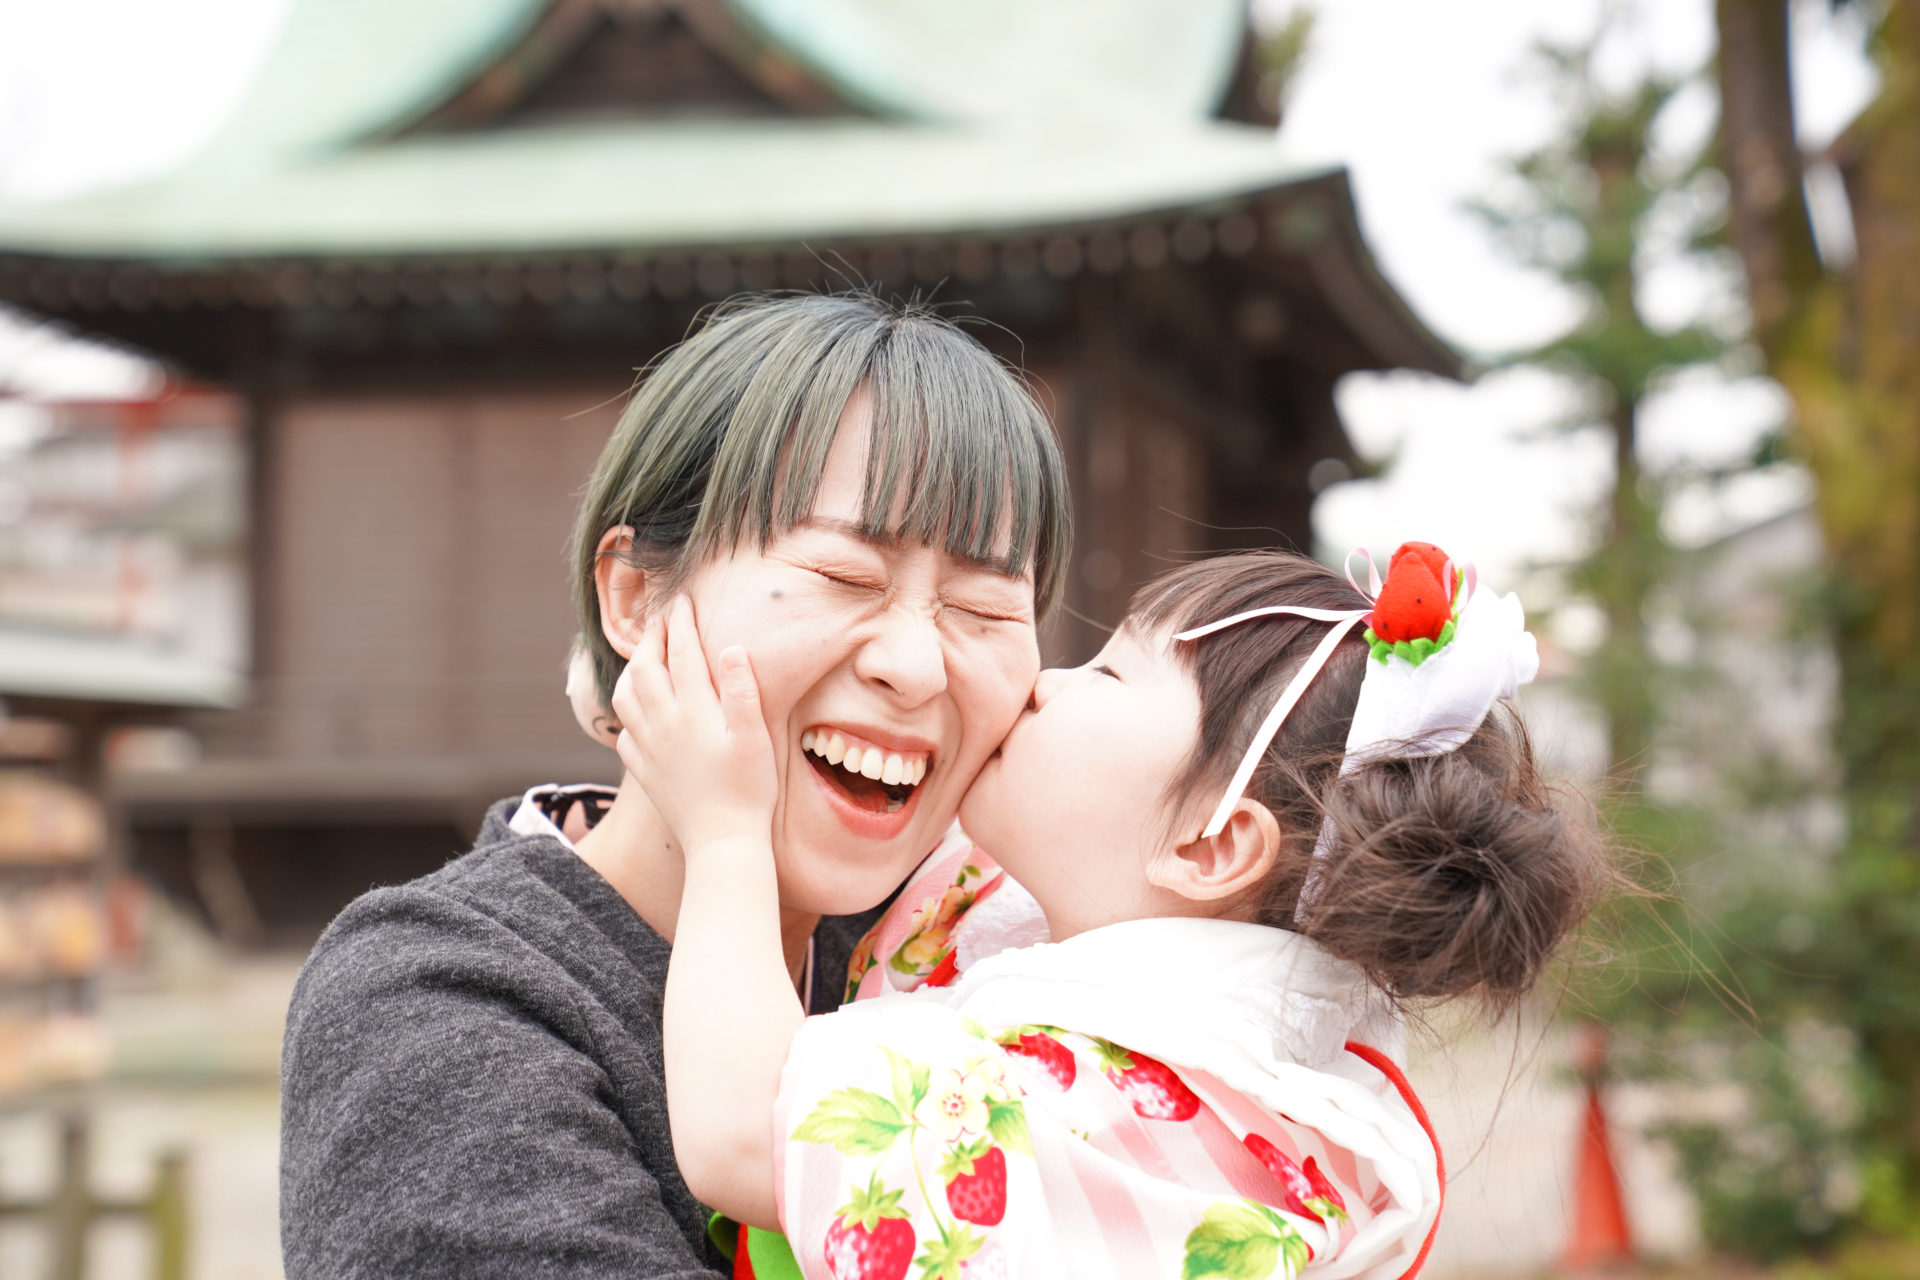 神社の境内で、ピンクと赤の着物を見に纏い、ママのほっぺにキスをする、3歳の女の子の七五三